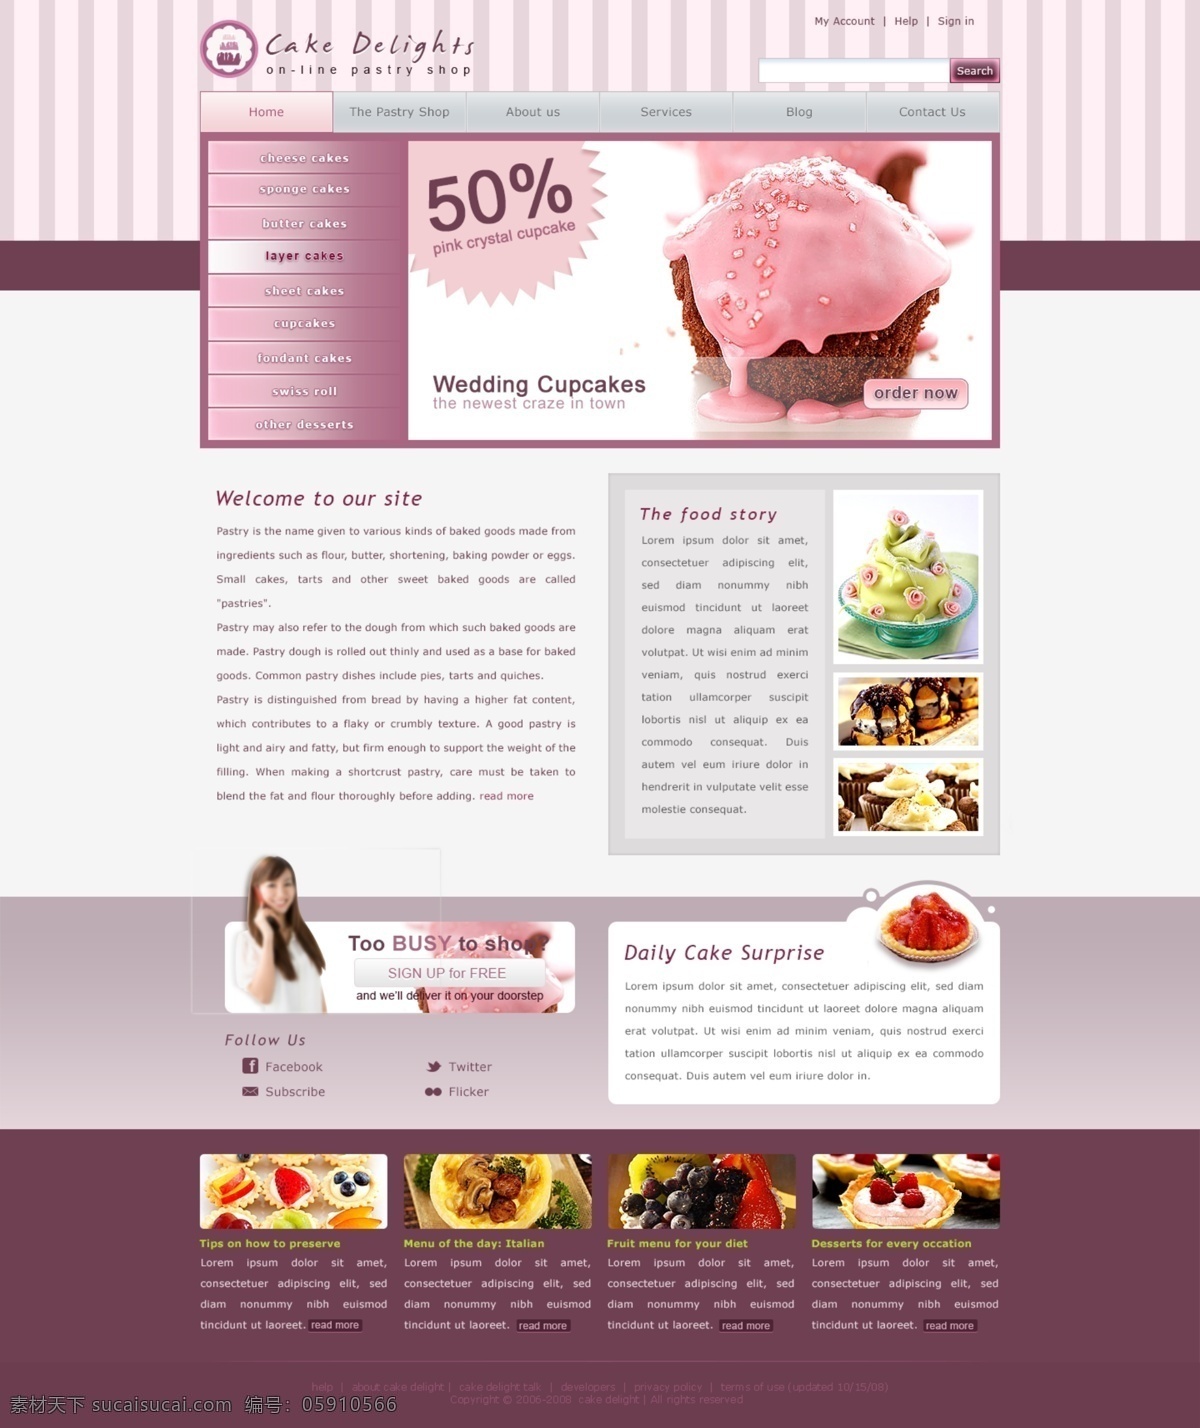 蛋糕 主题 网页 版式 源文件 分层 网页设计 网页模板 网页界面 界面设计 ui设计 网页版式 版式设计 蛋糕店 粉红色 竖纹 条纹 暗红色 欧美模板 白色